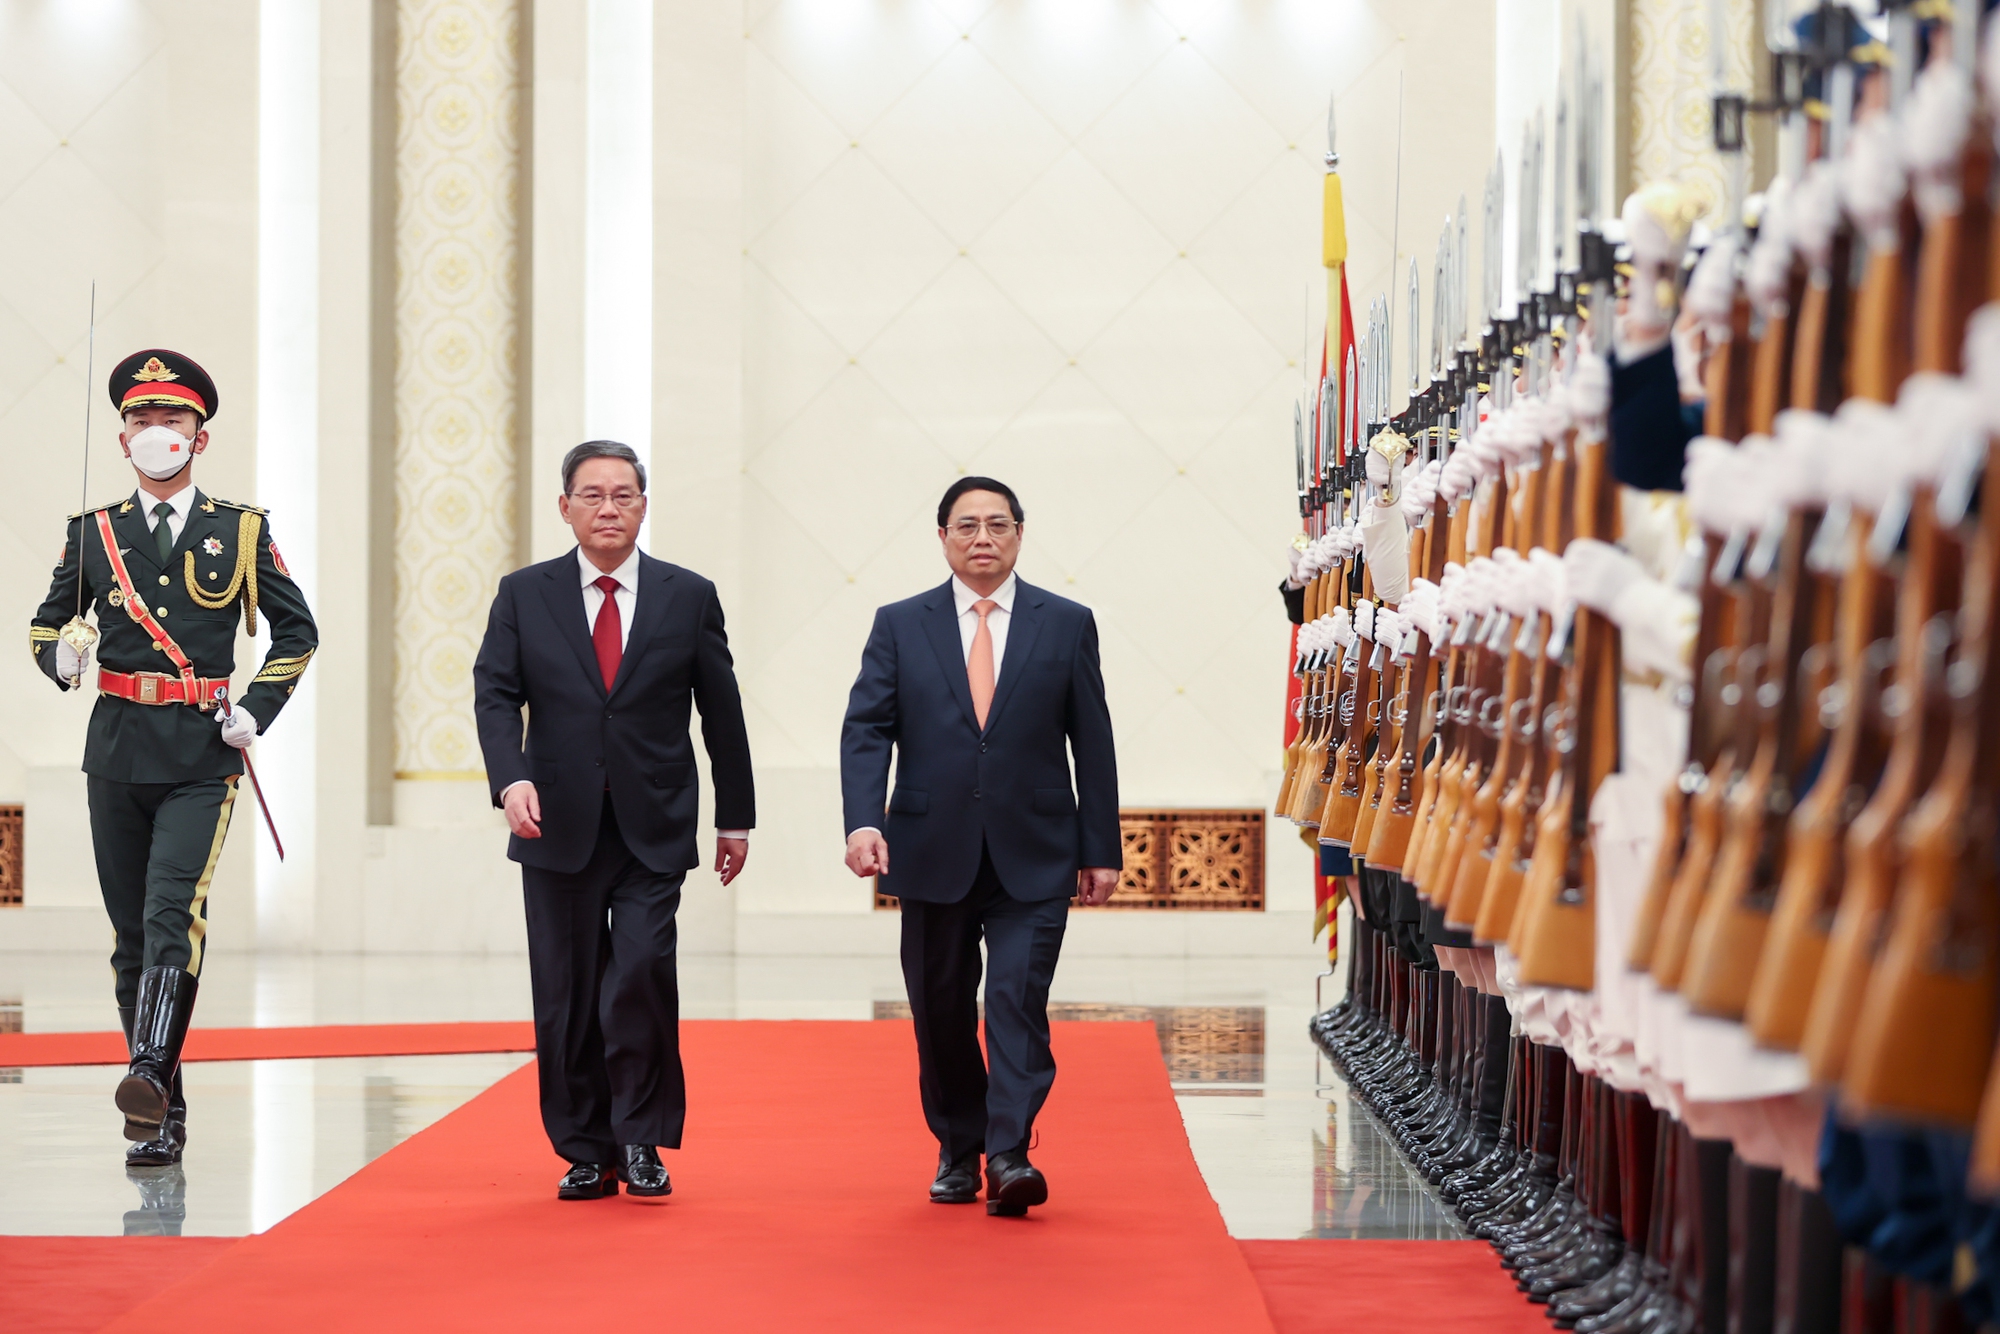 Chùm ảnh: Lễ đón chính thức Thủ tướng Chính phủ Phạm Minh Chính thăm Trung Quốc - Ảnh 2.